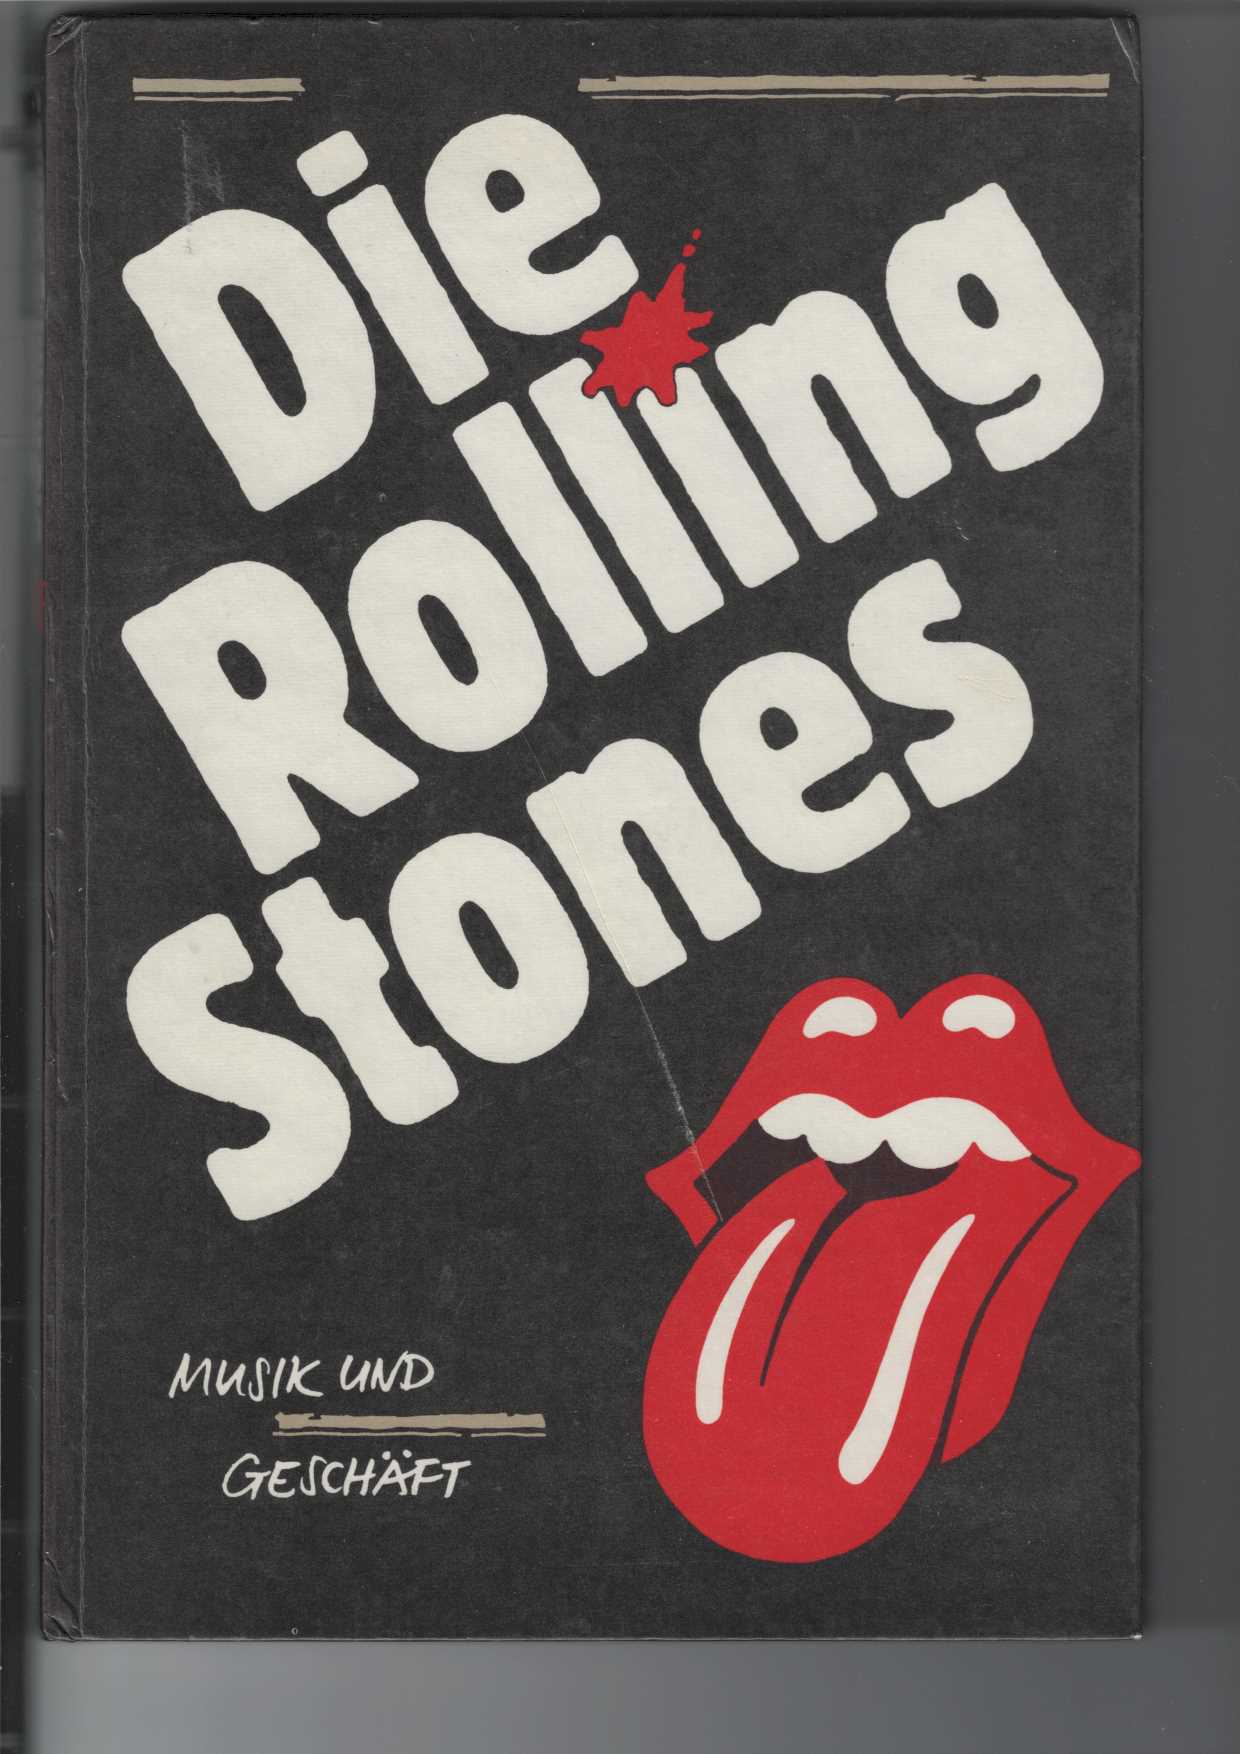 Die Rolling Stones.